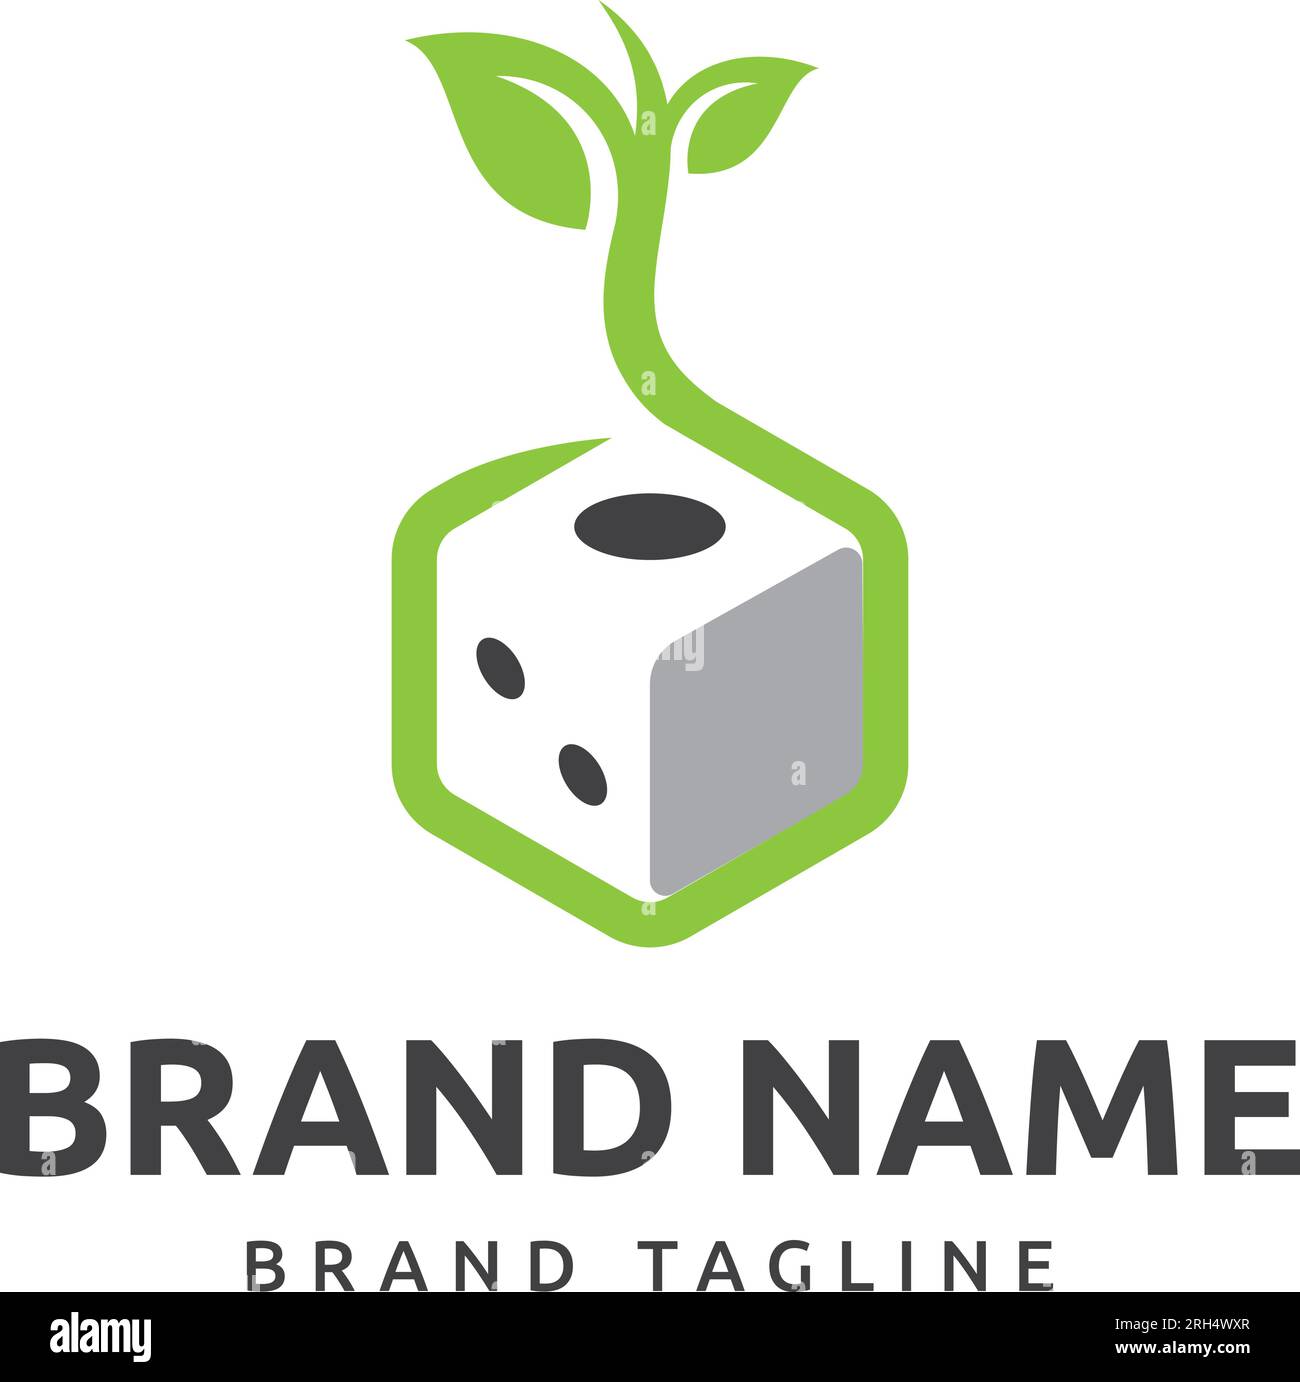 Würfelpflanze Logo. Kombiniertes Logo in Form eines Würfel- und Pflanzenlogos, Vorlage für das Würfelpflanzenlogo Stock Vektor